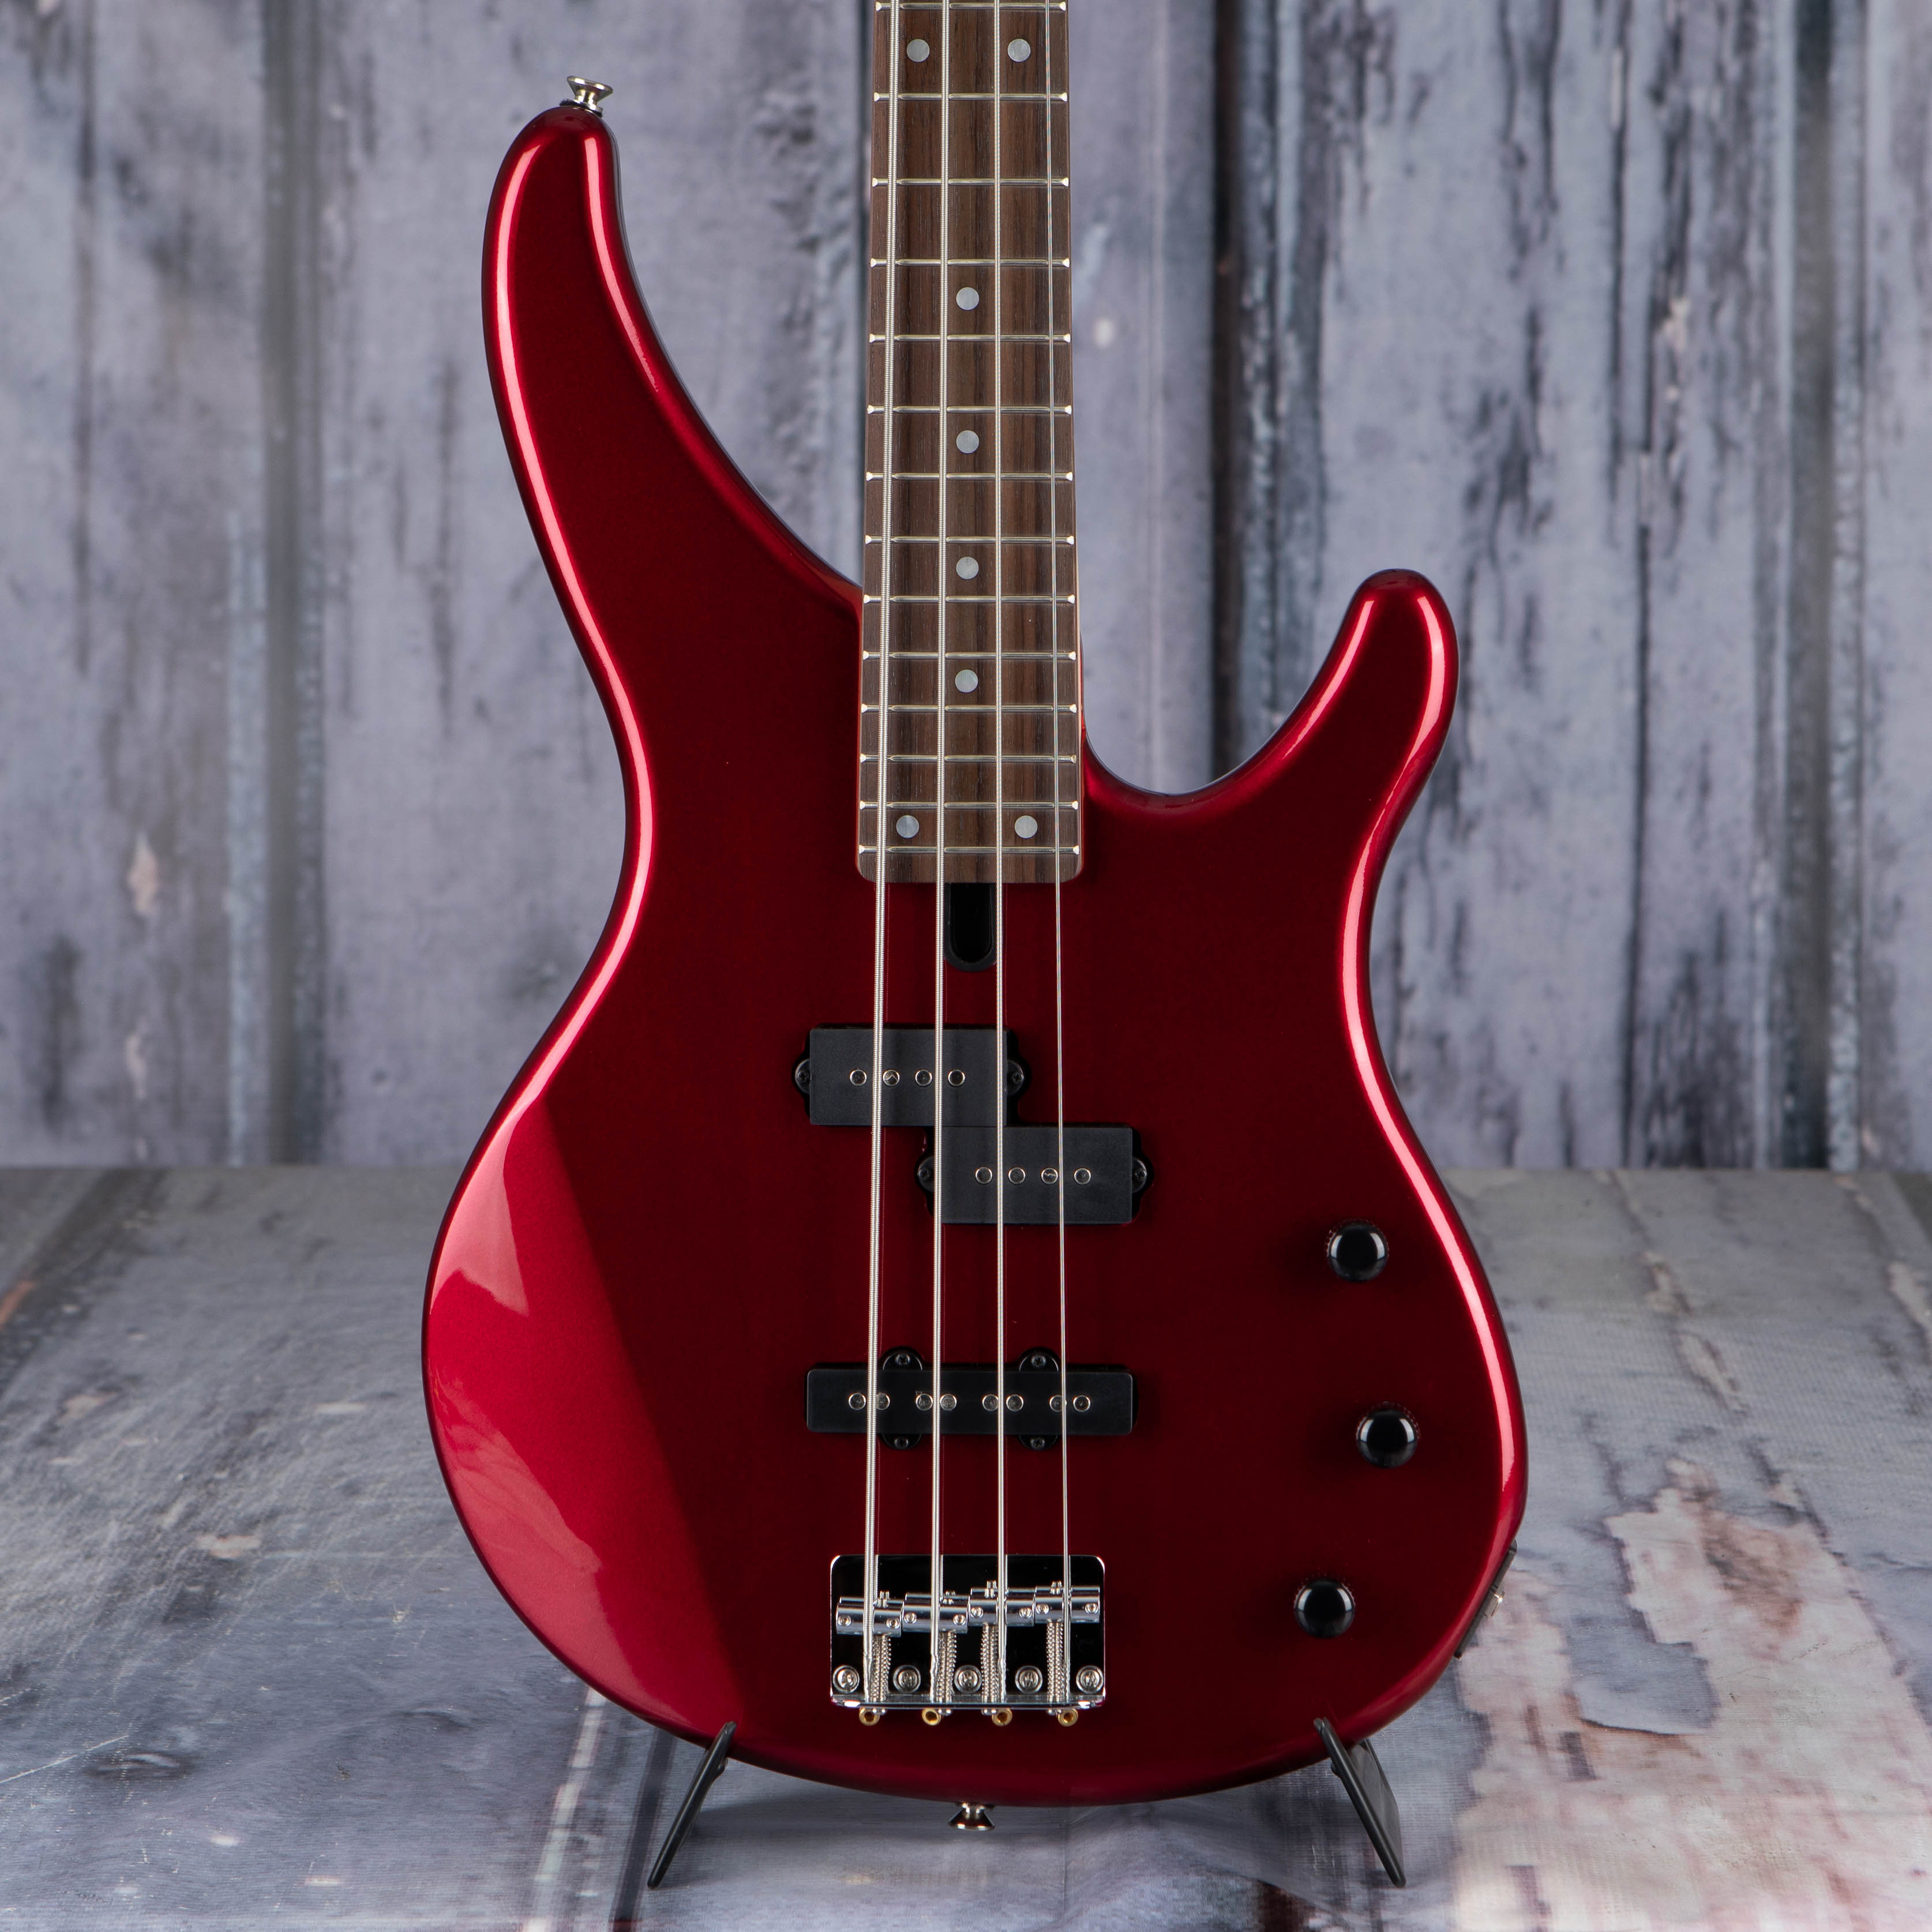 Yamaha TRBX174 Electric Bass Guitar, Metallic Red